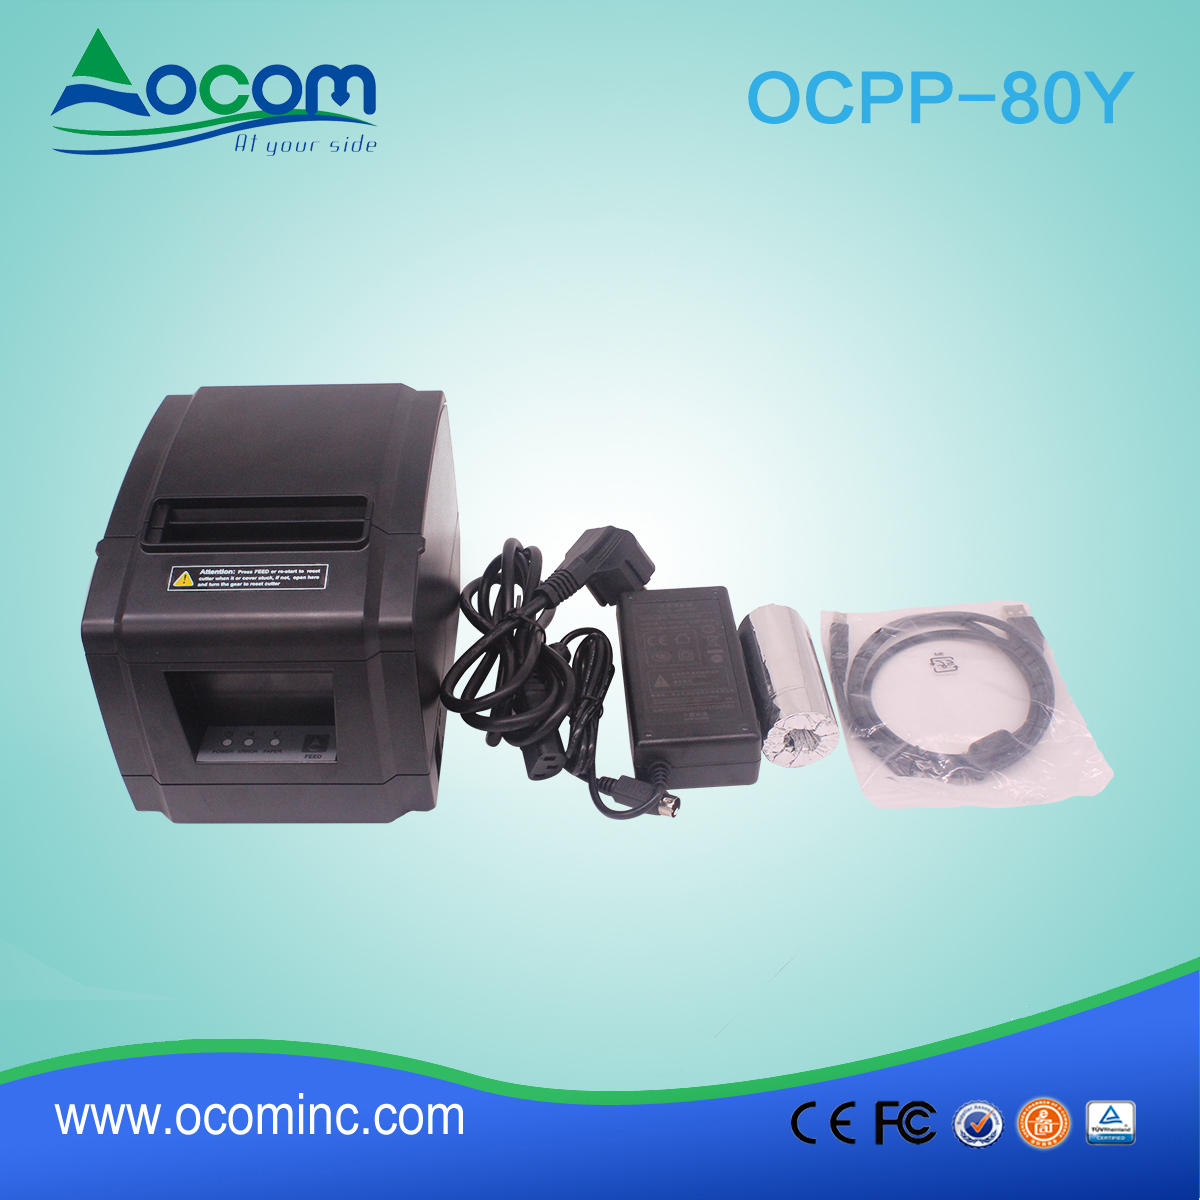 OCPP-80Y-Auto cutter 200mm/sec 80mm POS printer